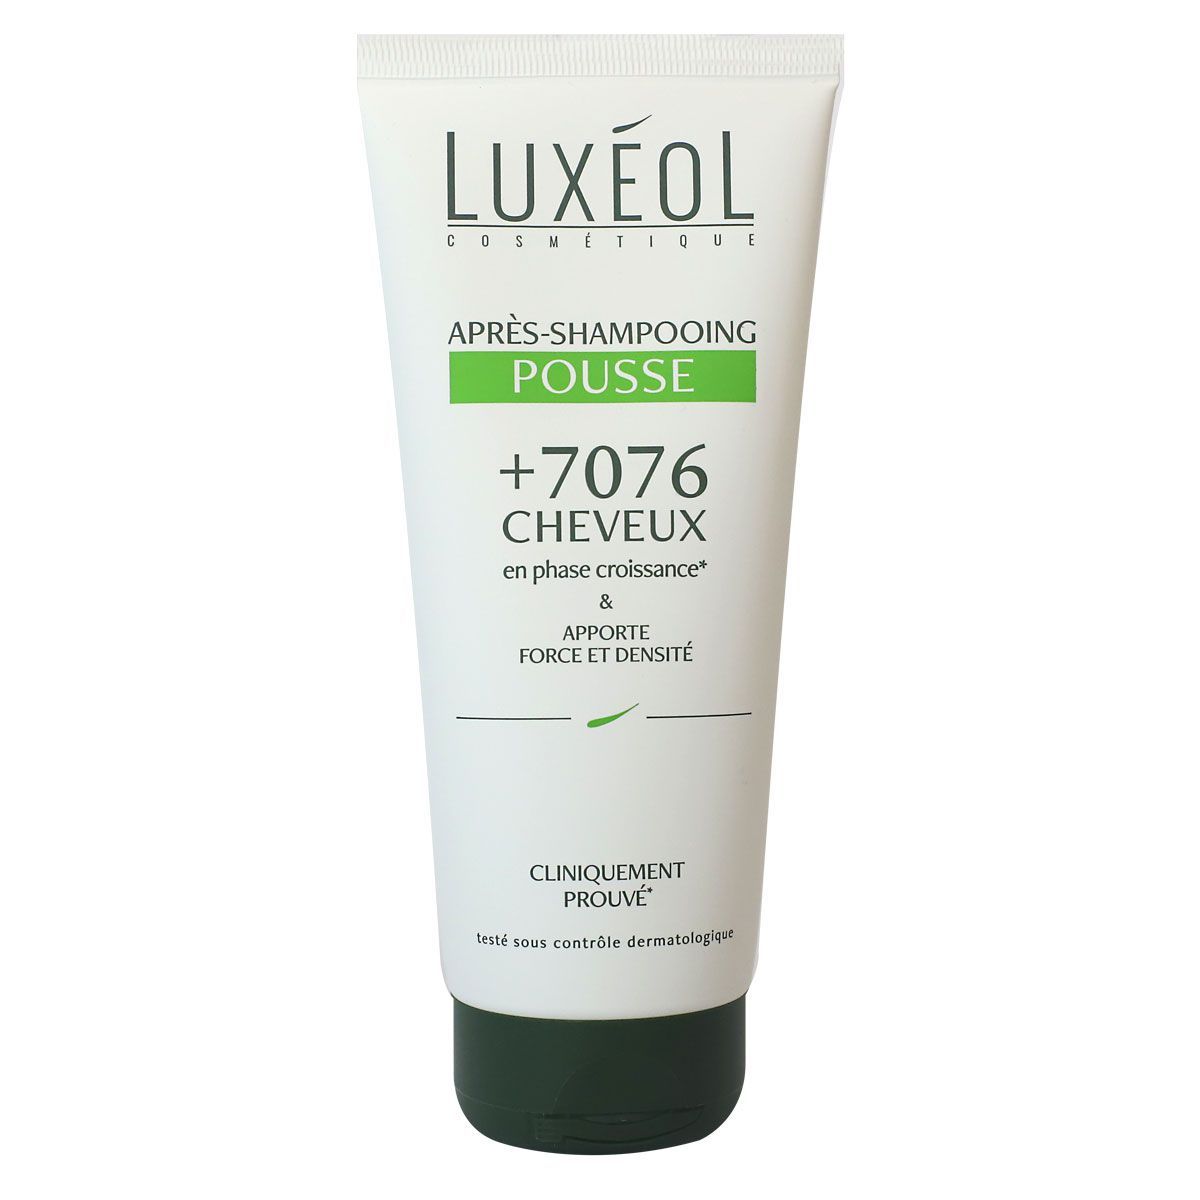 L’après-shampooing Pousse de Luxeol discount, le soin capillaire,